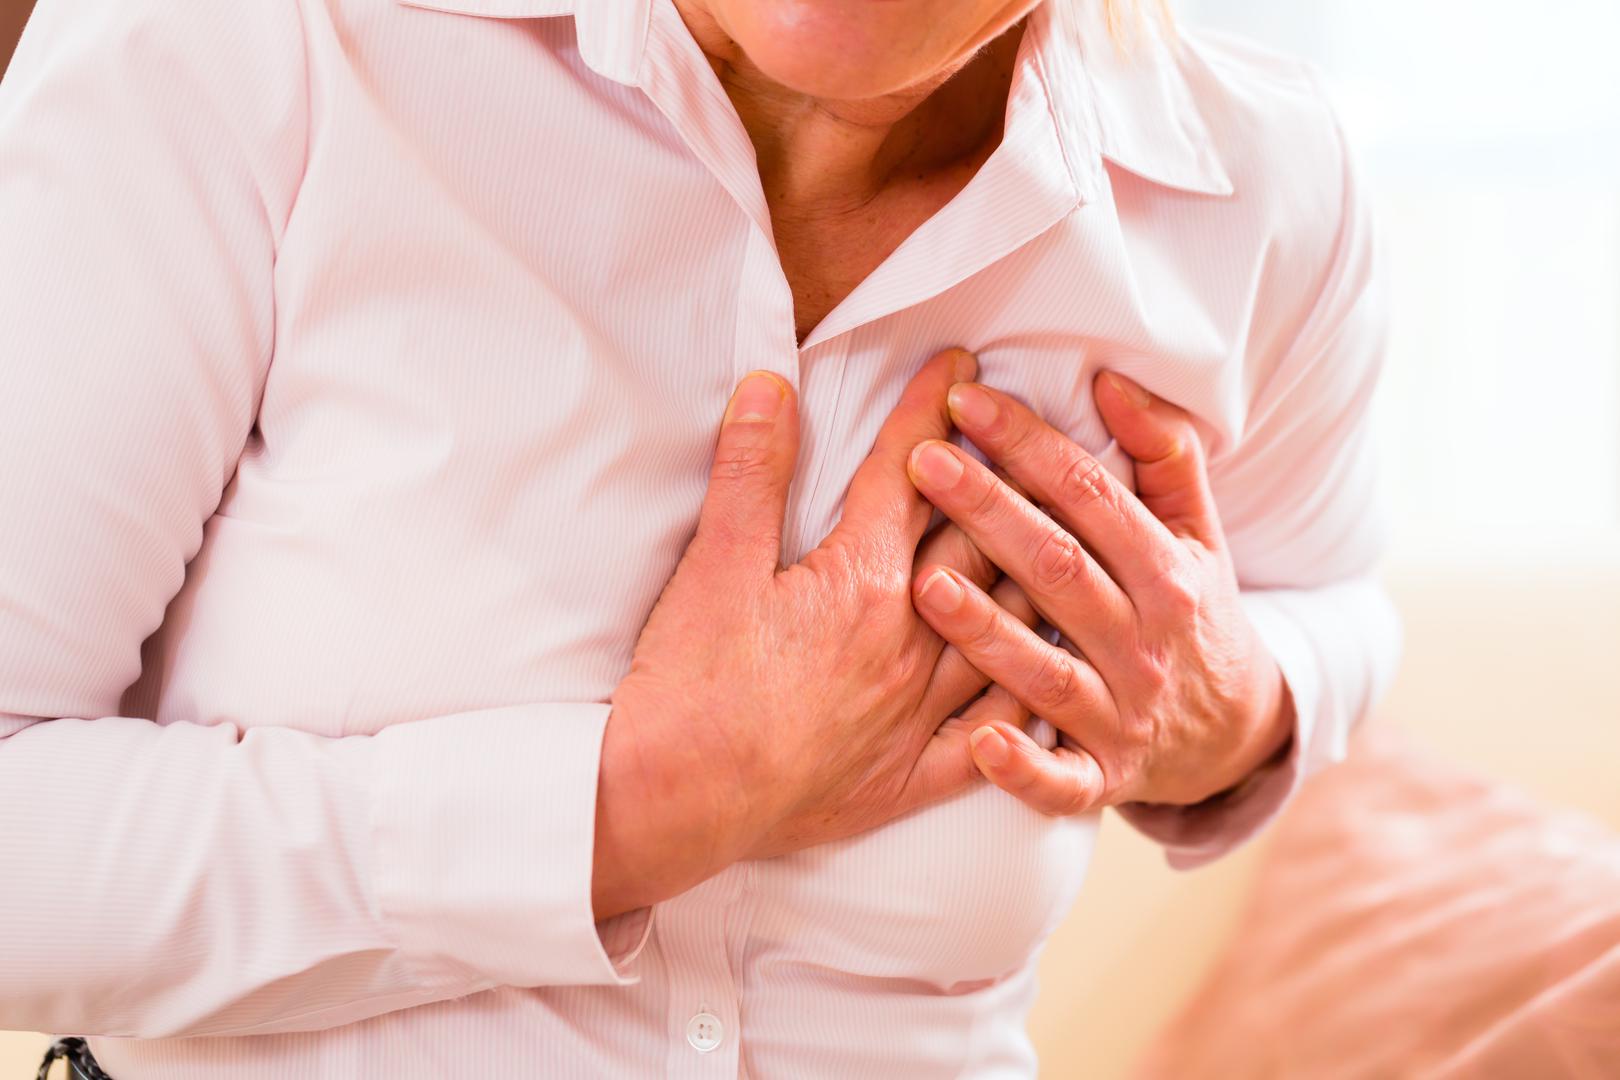 Iscrpljeni ste – Ekstremni umor jedan je od glavnih znakova srčanog udara kod žena, no istraživanja su pokazala da ga osjećaju i muškarci. Osjećaj neprestanog umora može signalizirati slabost lijeve klijetke vašeg srca, odgovorne za pumpanje krvi iz srca do ostatka tijela. Ako srce ne pumpa dovoljno krvi rezultat je umor jer tijelo ne dobiva dovoljno svježeg kisika.
